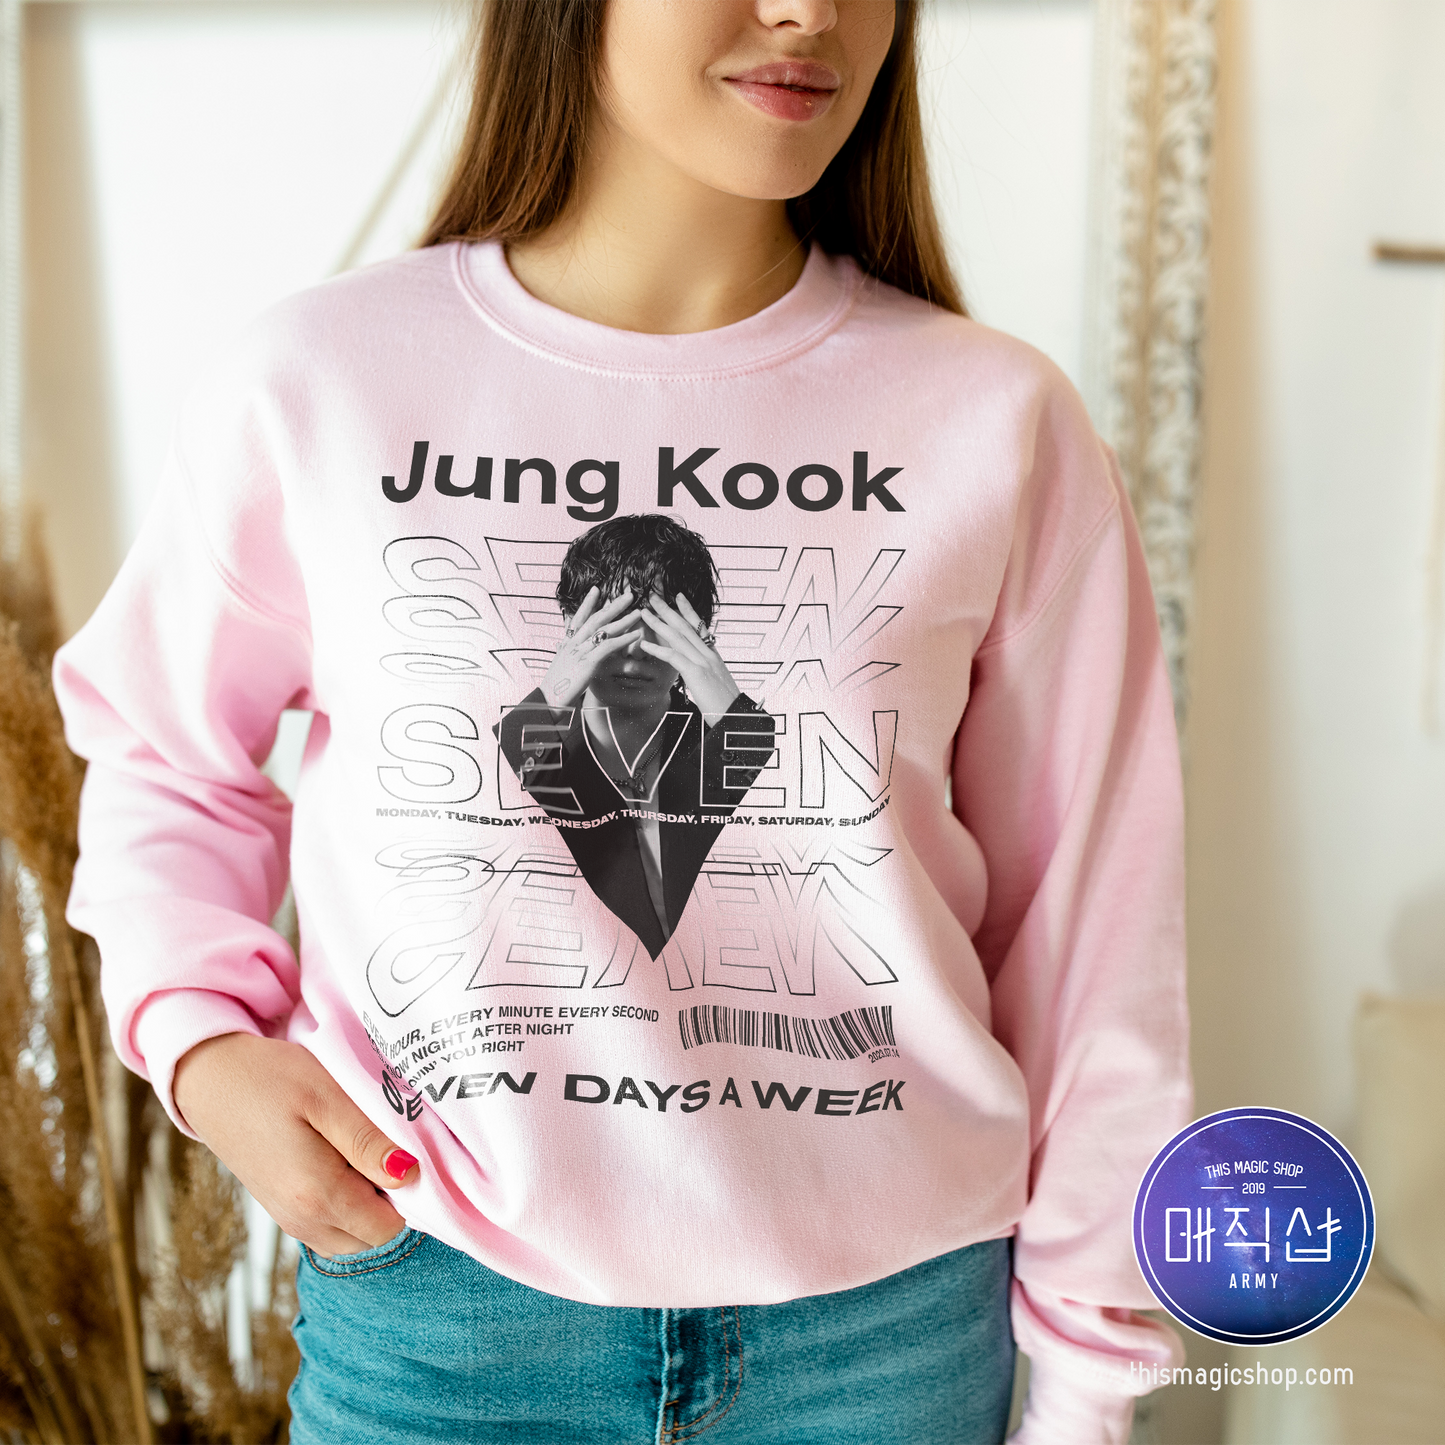 JK Jung Kook "Seven" Sweatshirt